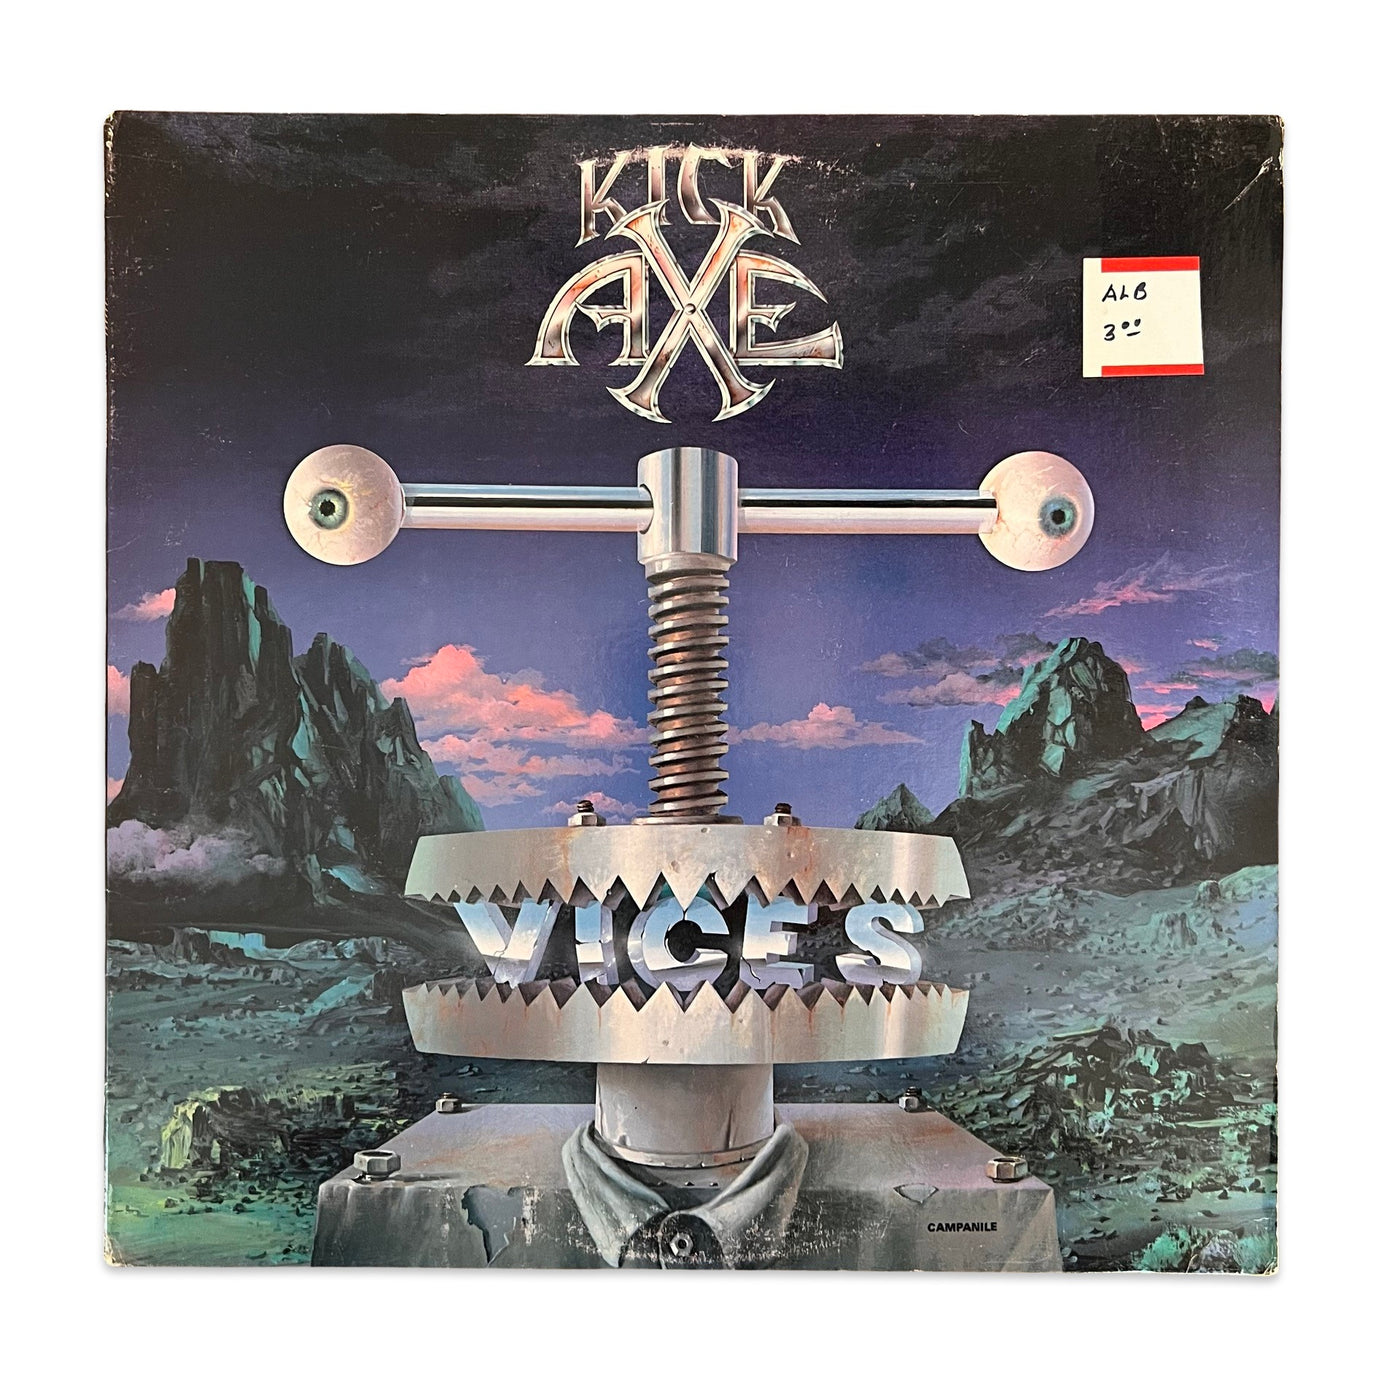 Kick Axe – Vices (1984)